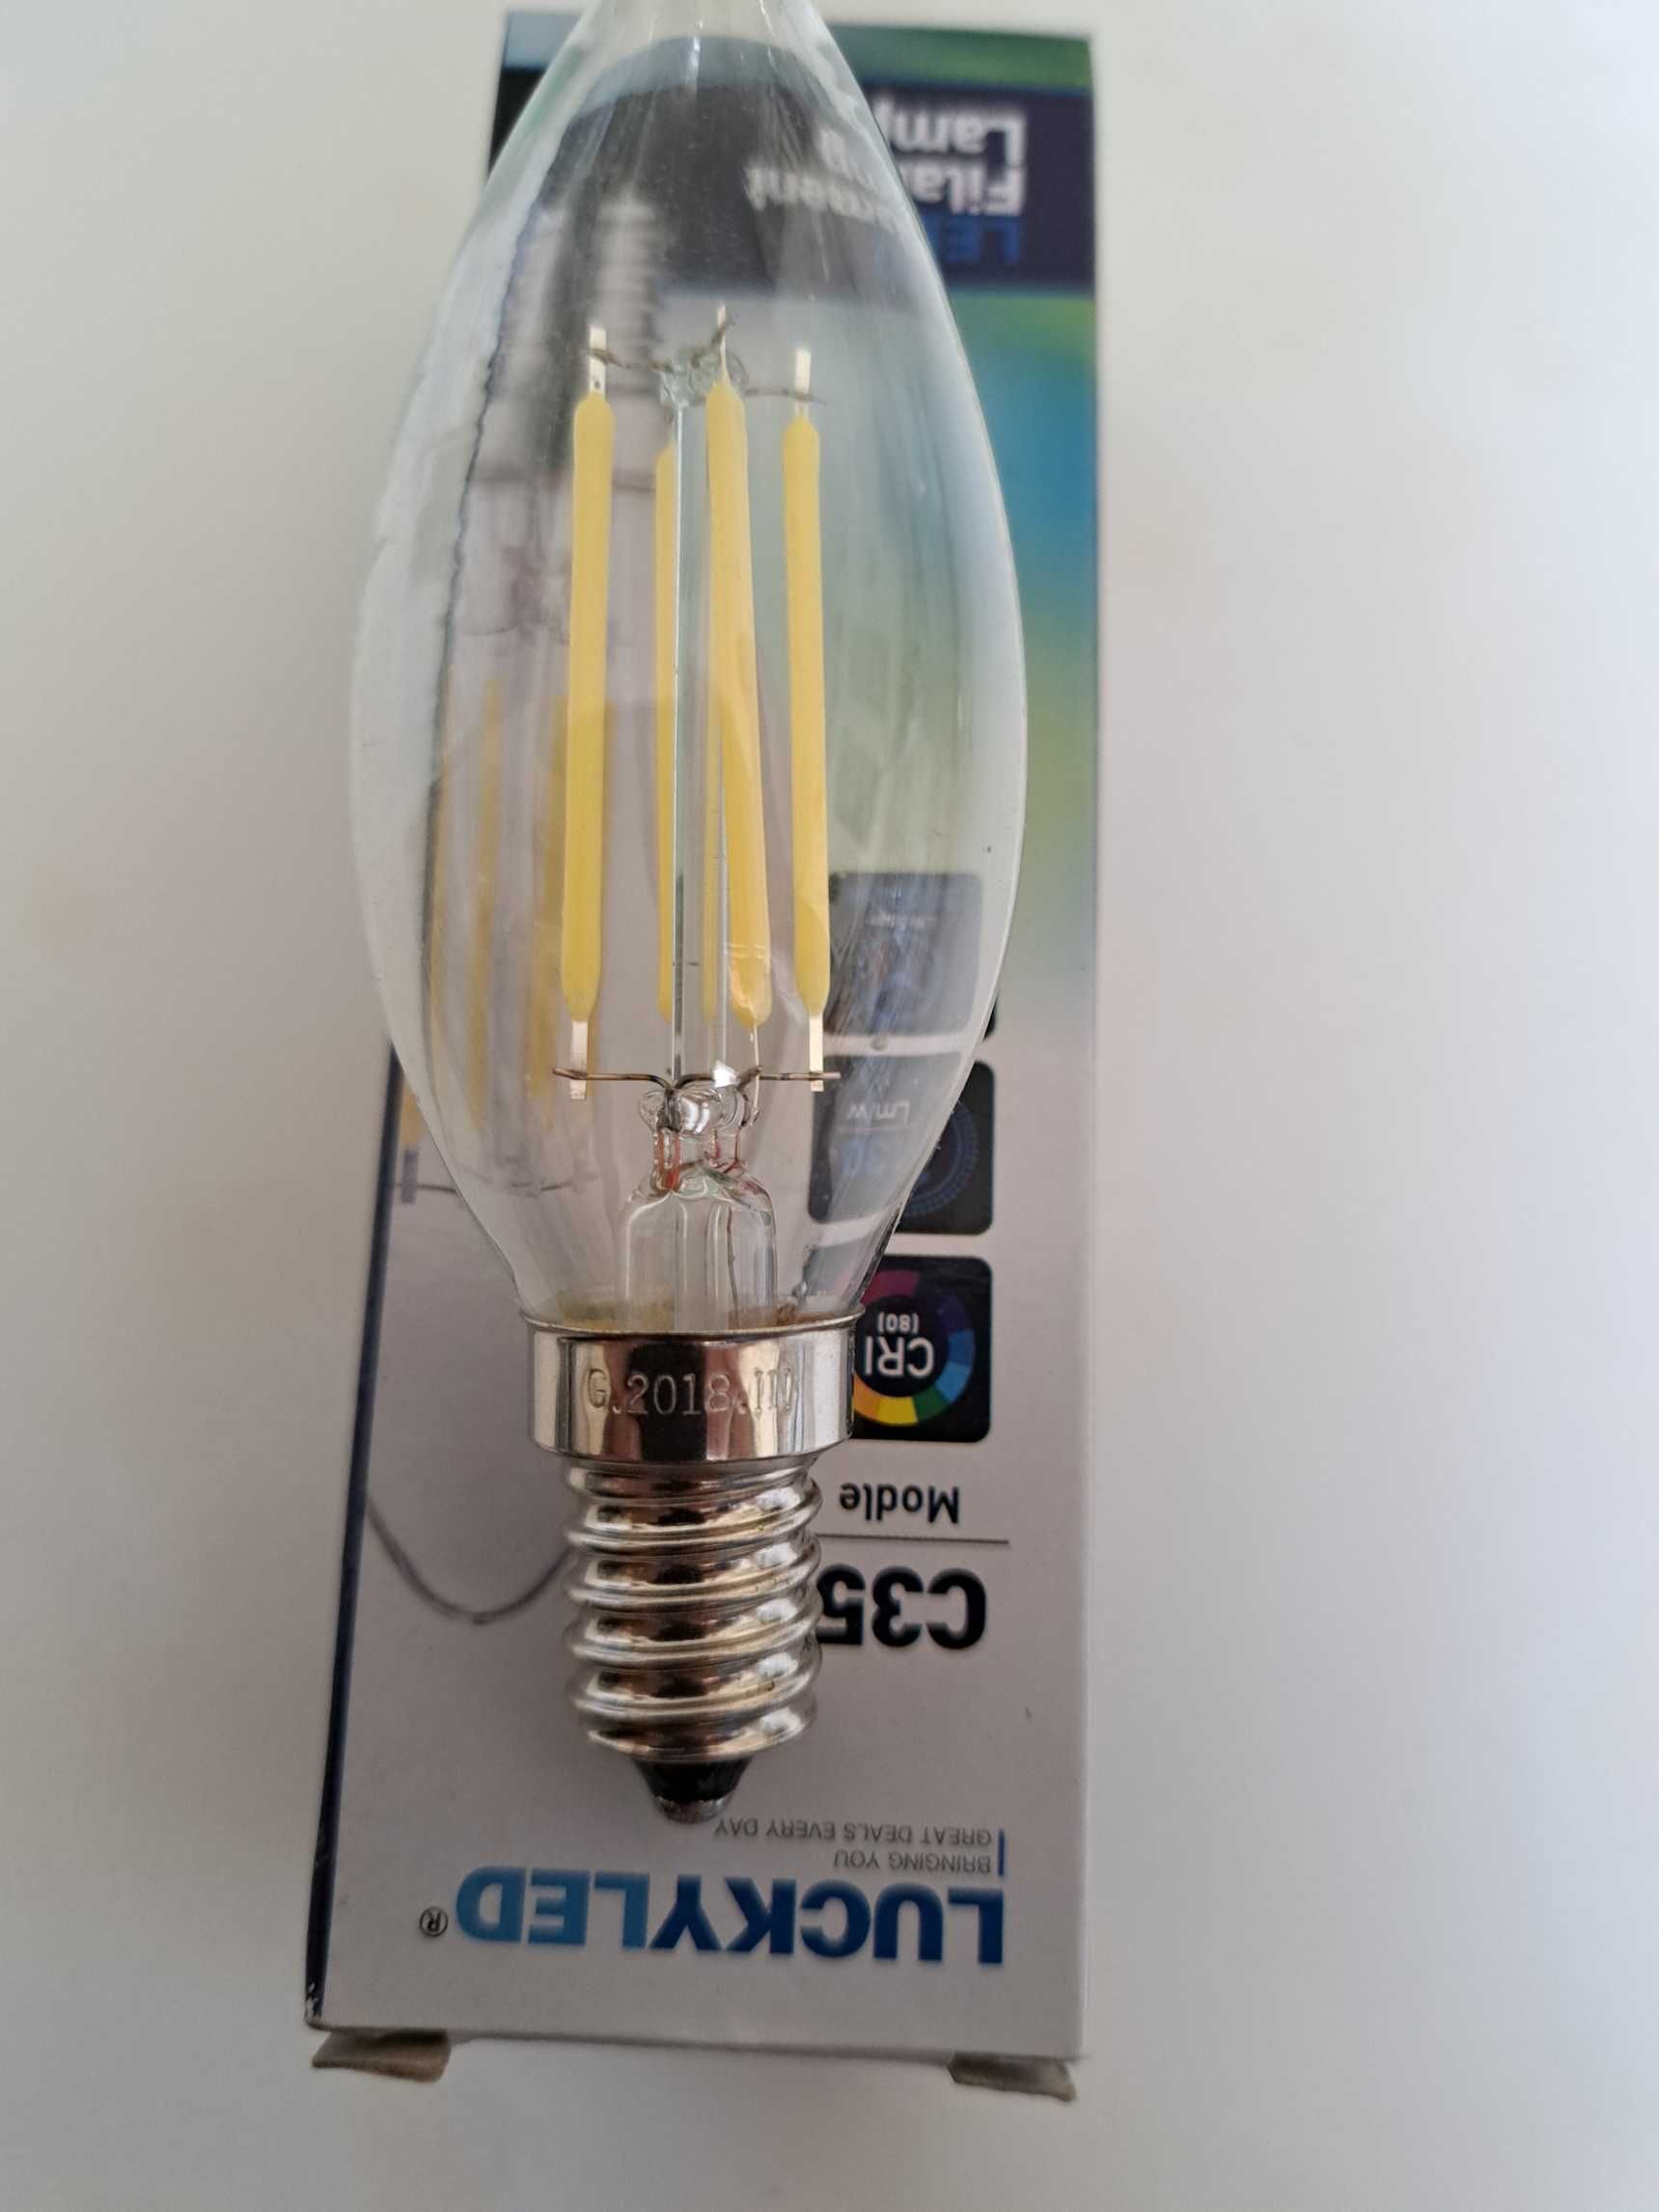 E14 5 x Lampadas LED de Filamento 220V 4W